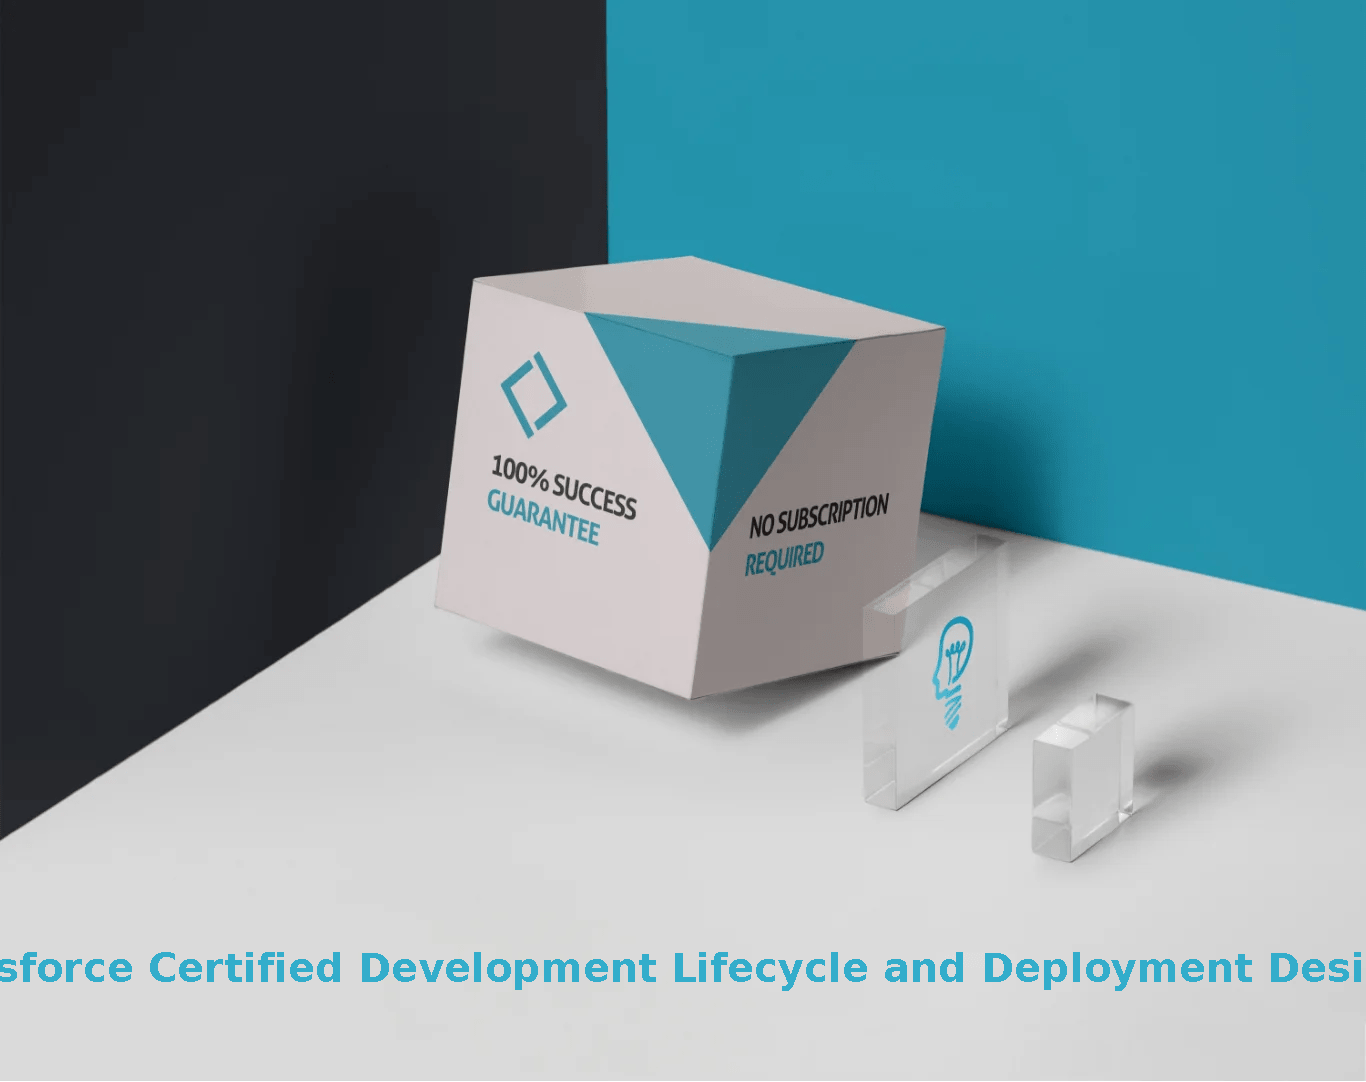 Development-Lifecycle-and-Deployment-Designer Exam Topics